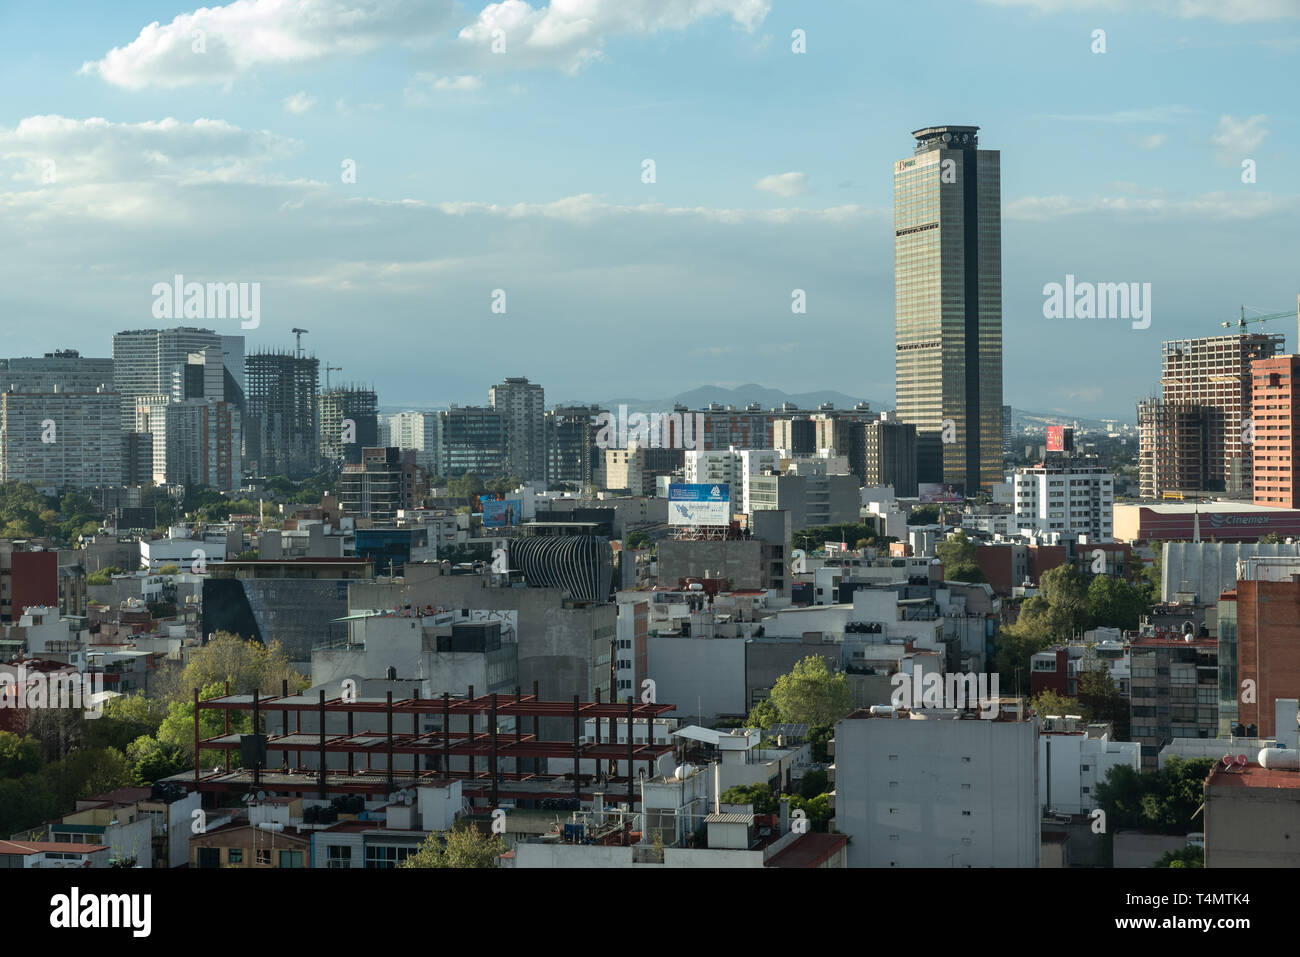 La PEMEX headquarters - un messicano di proprietà dello stato petroleum company - torre al di sopra di Città del Messico, una delle più grandi città del mondo. Foto Stock